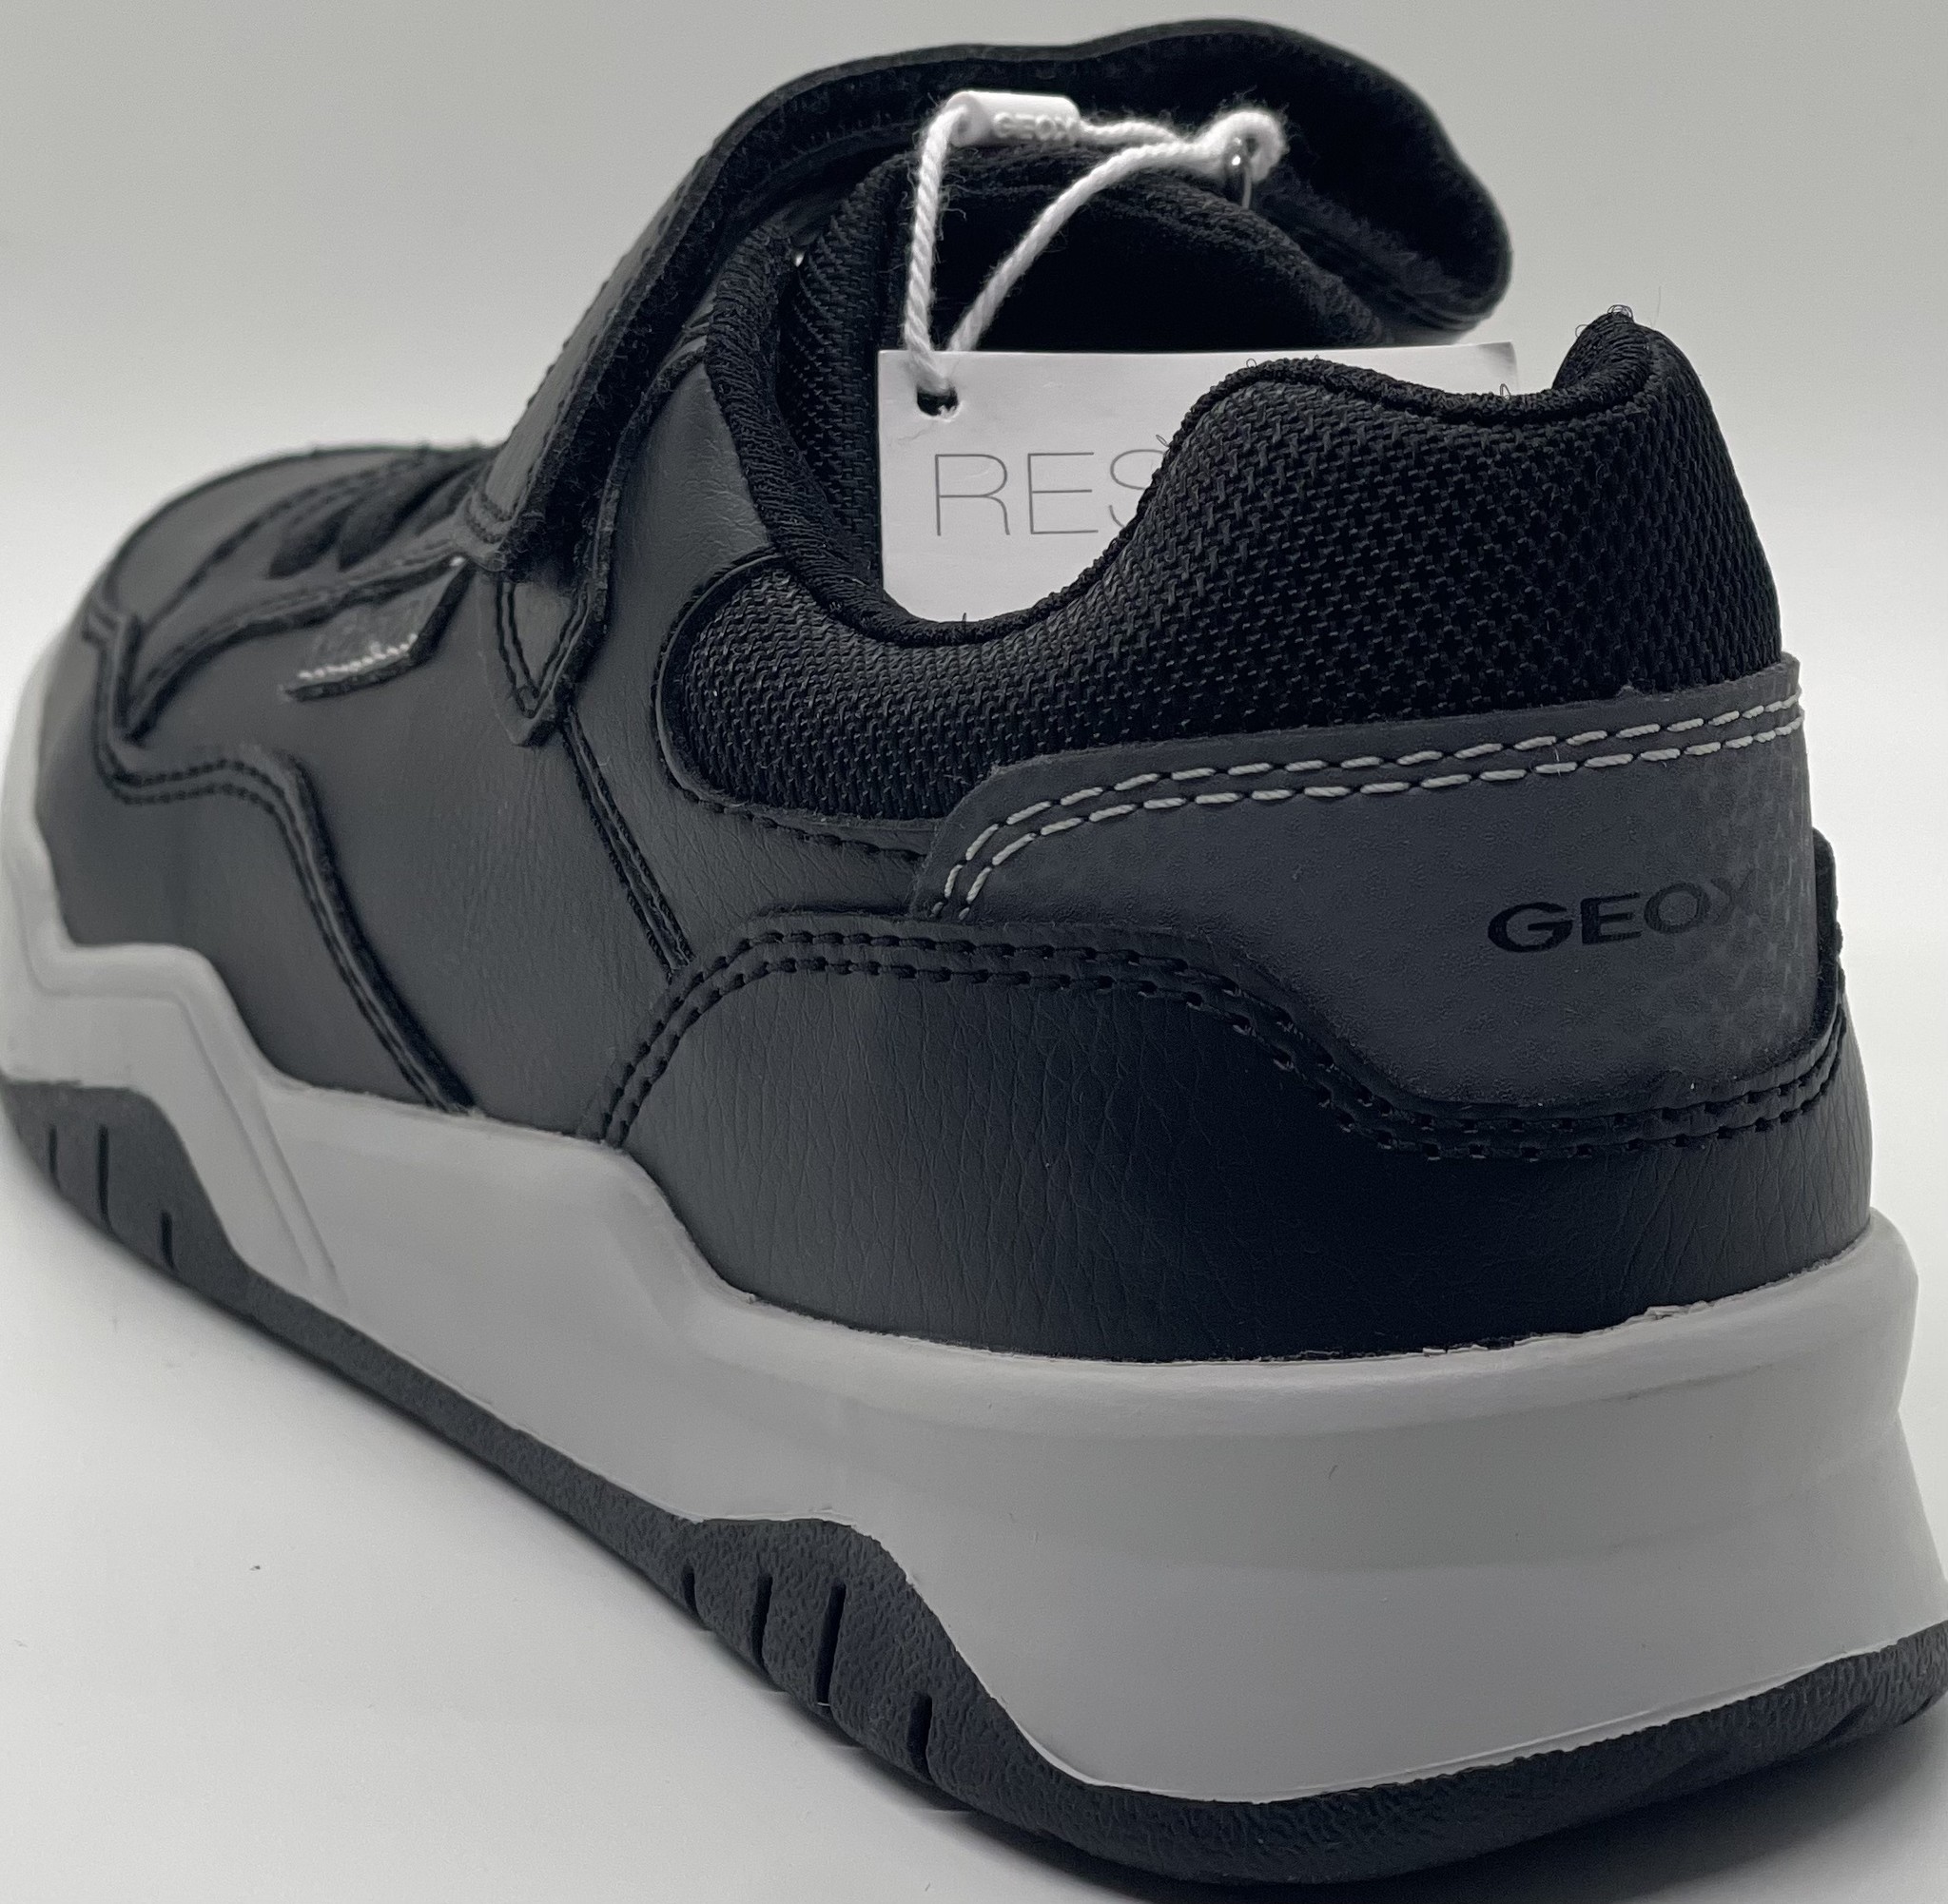 caravana Elegibilidad a tiempo Geox Boy's J Perth Boy Black - Continental Shoes